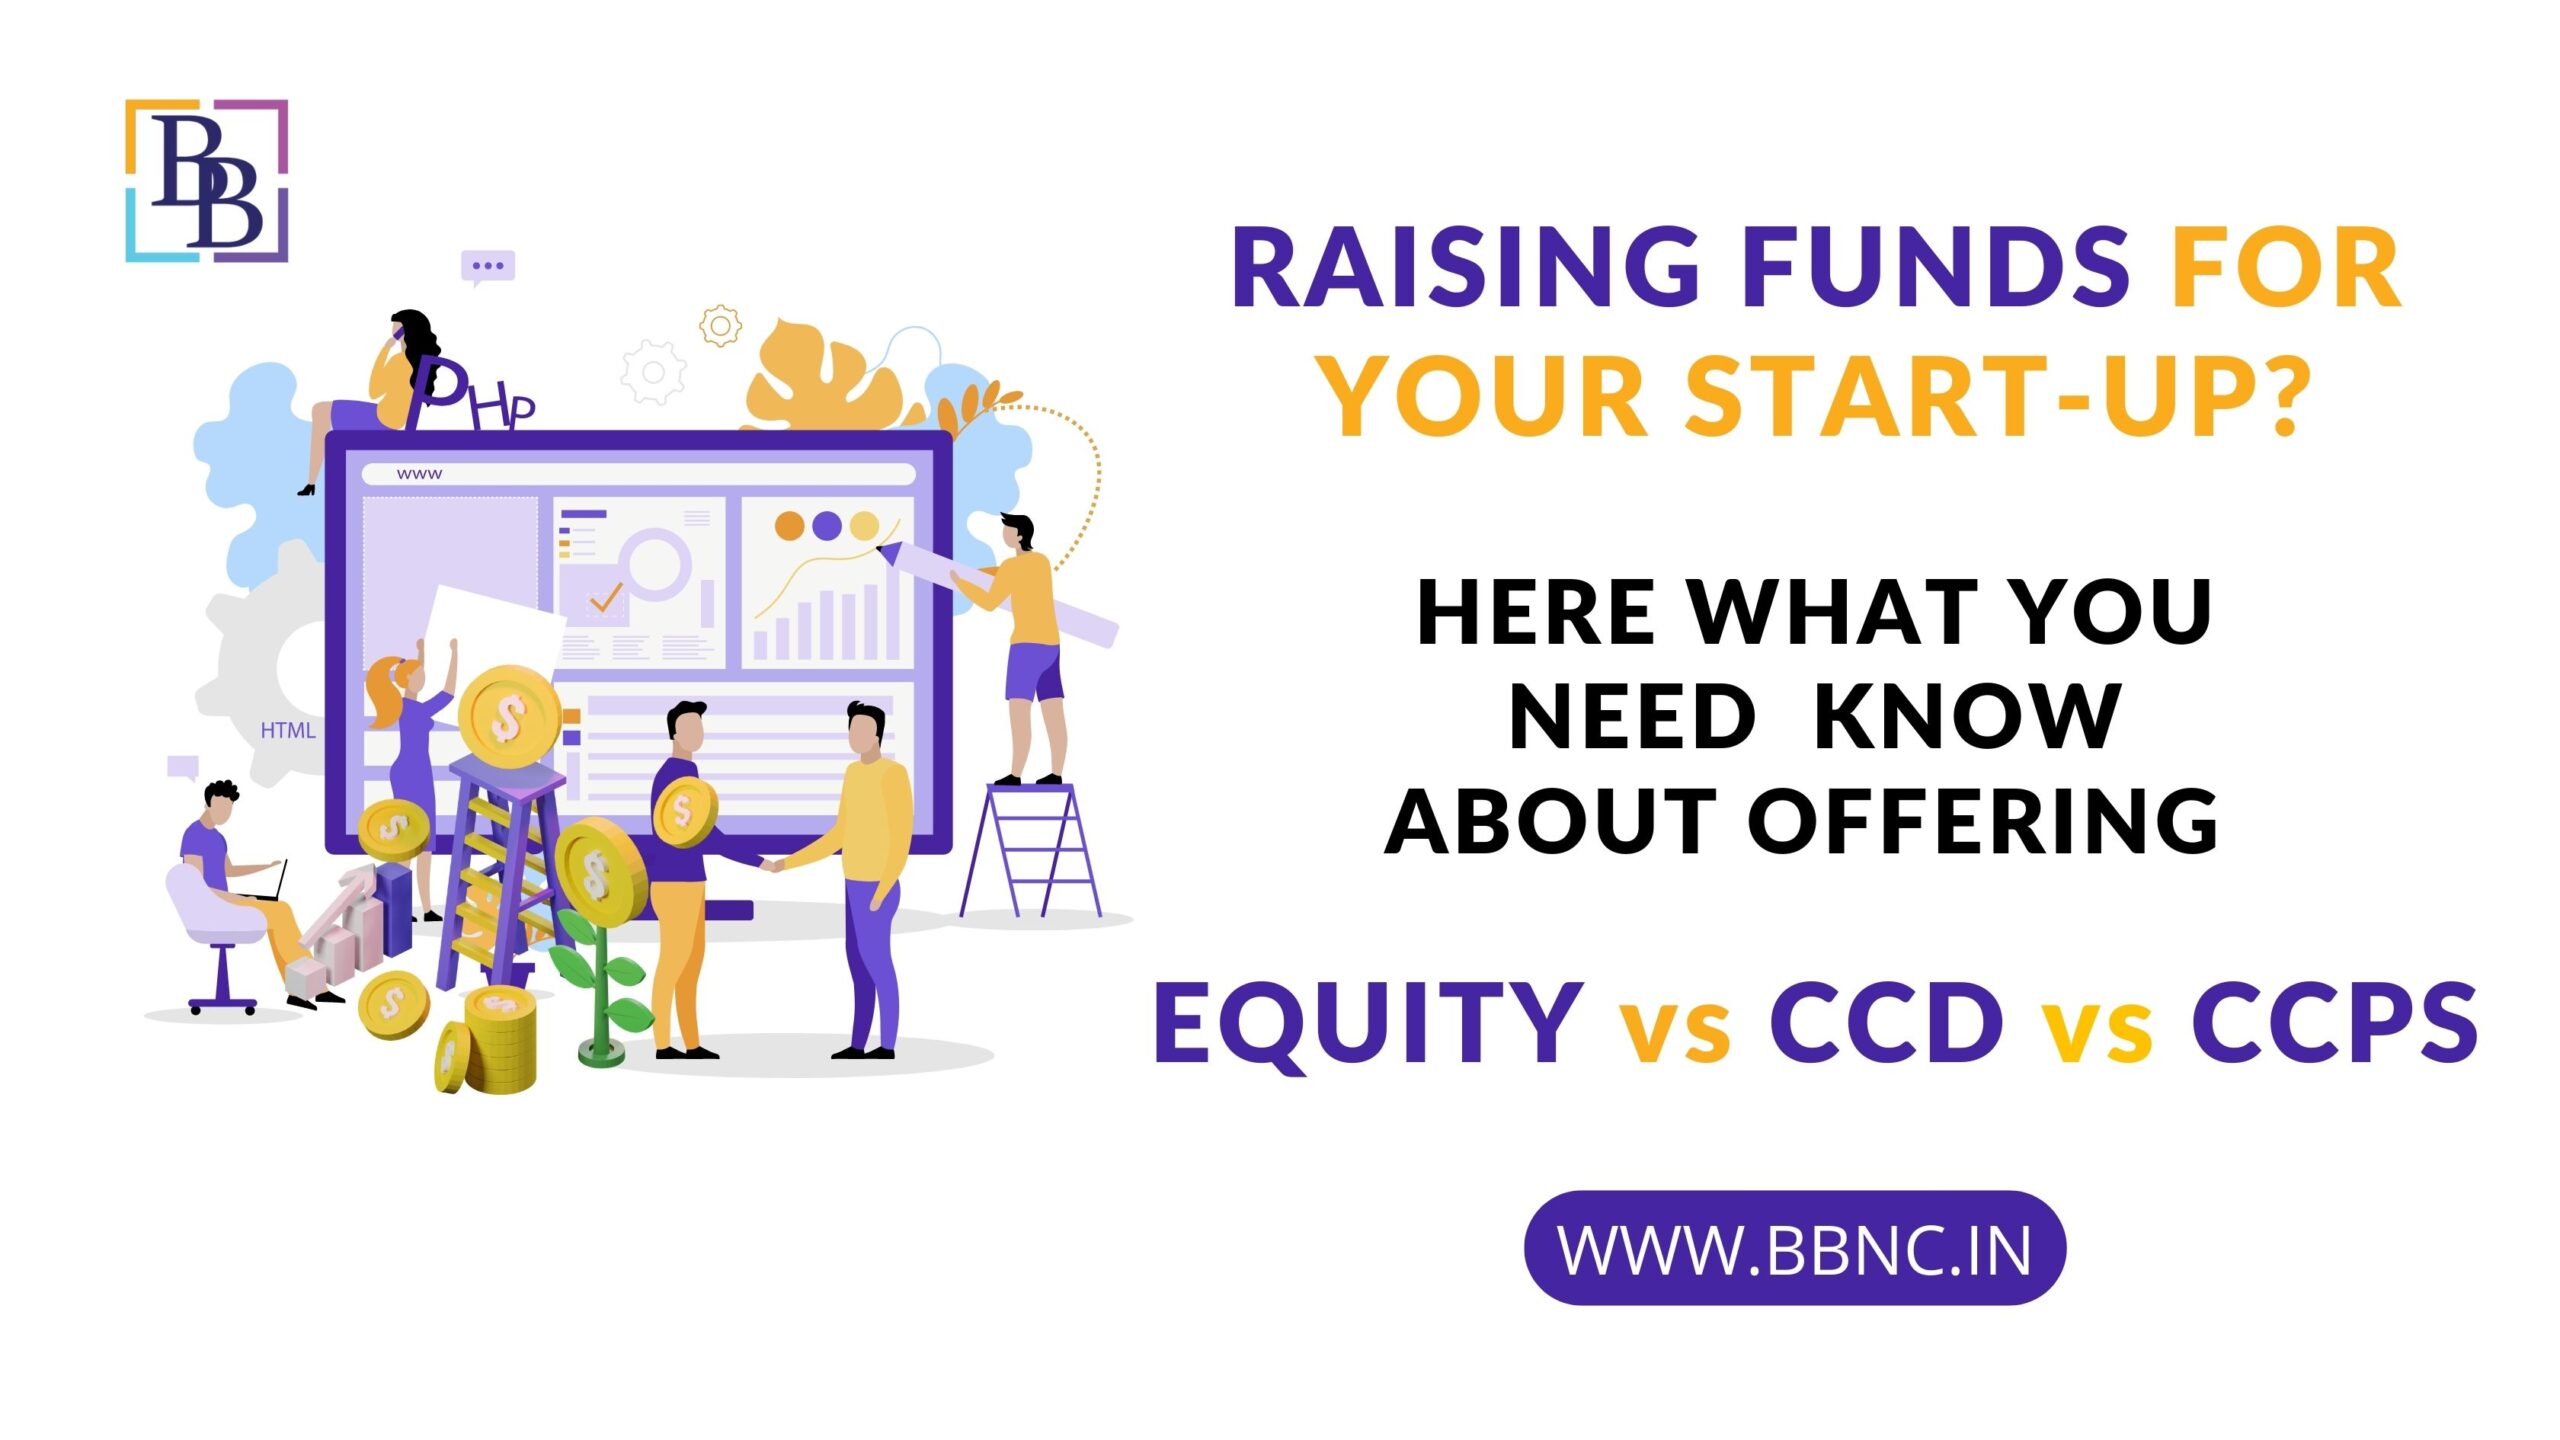 CCD vs CCPS vs Equity